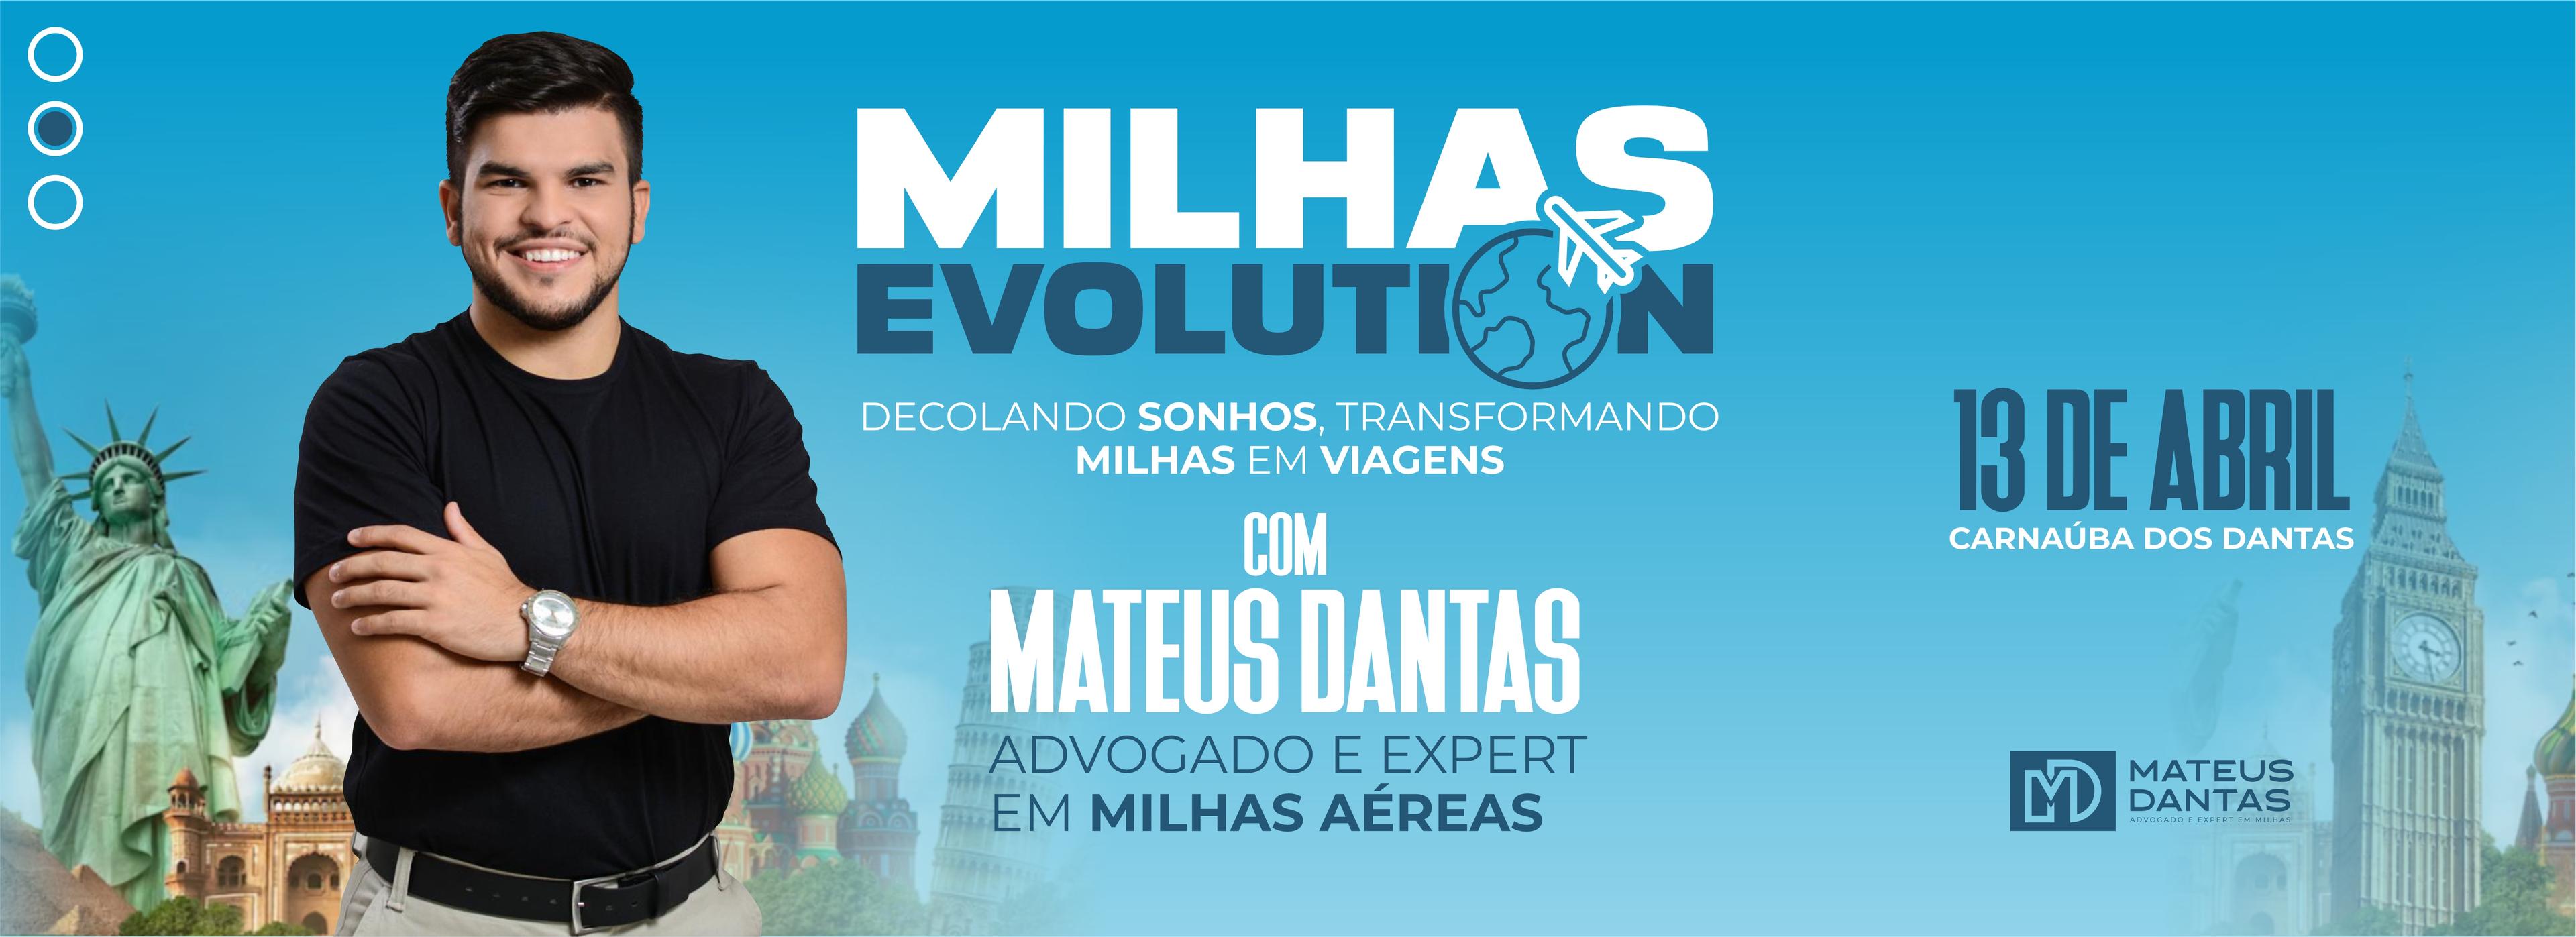 Banner do evento Milhas Evolution